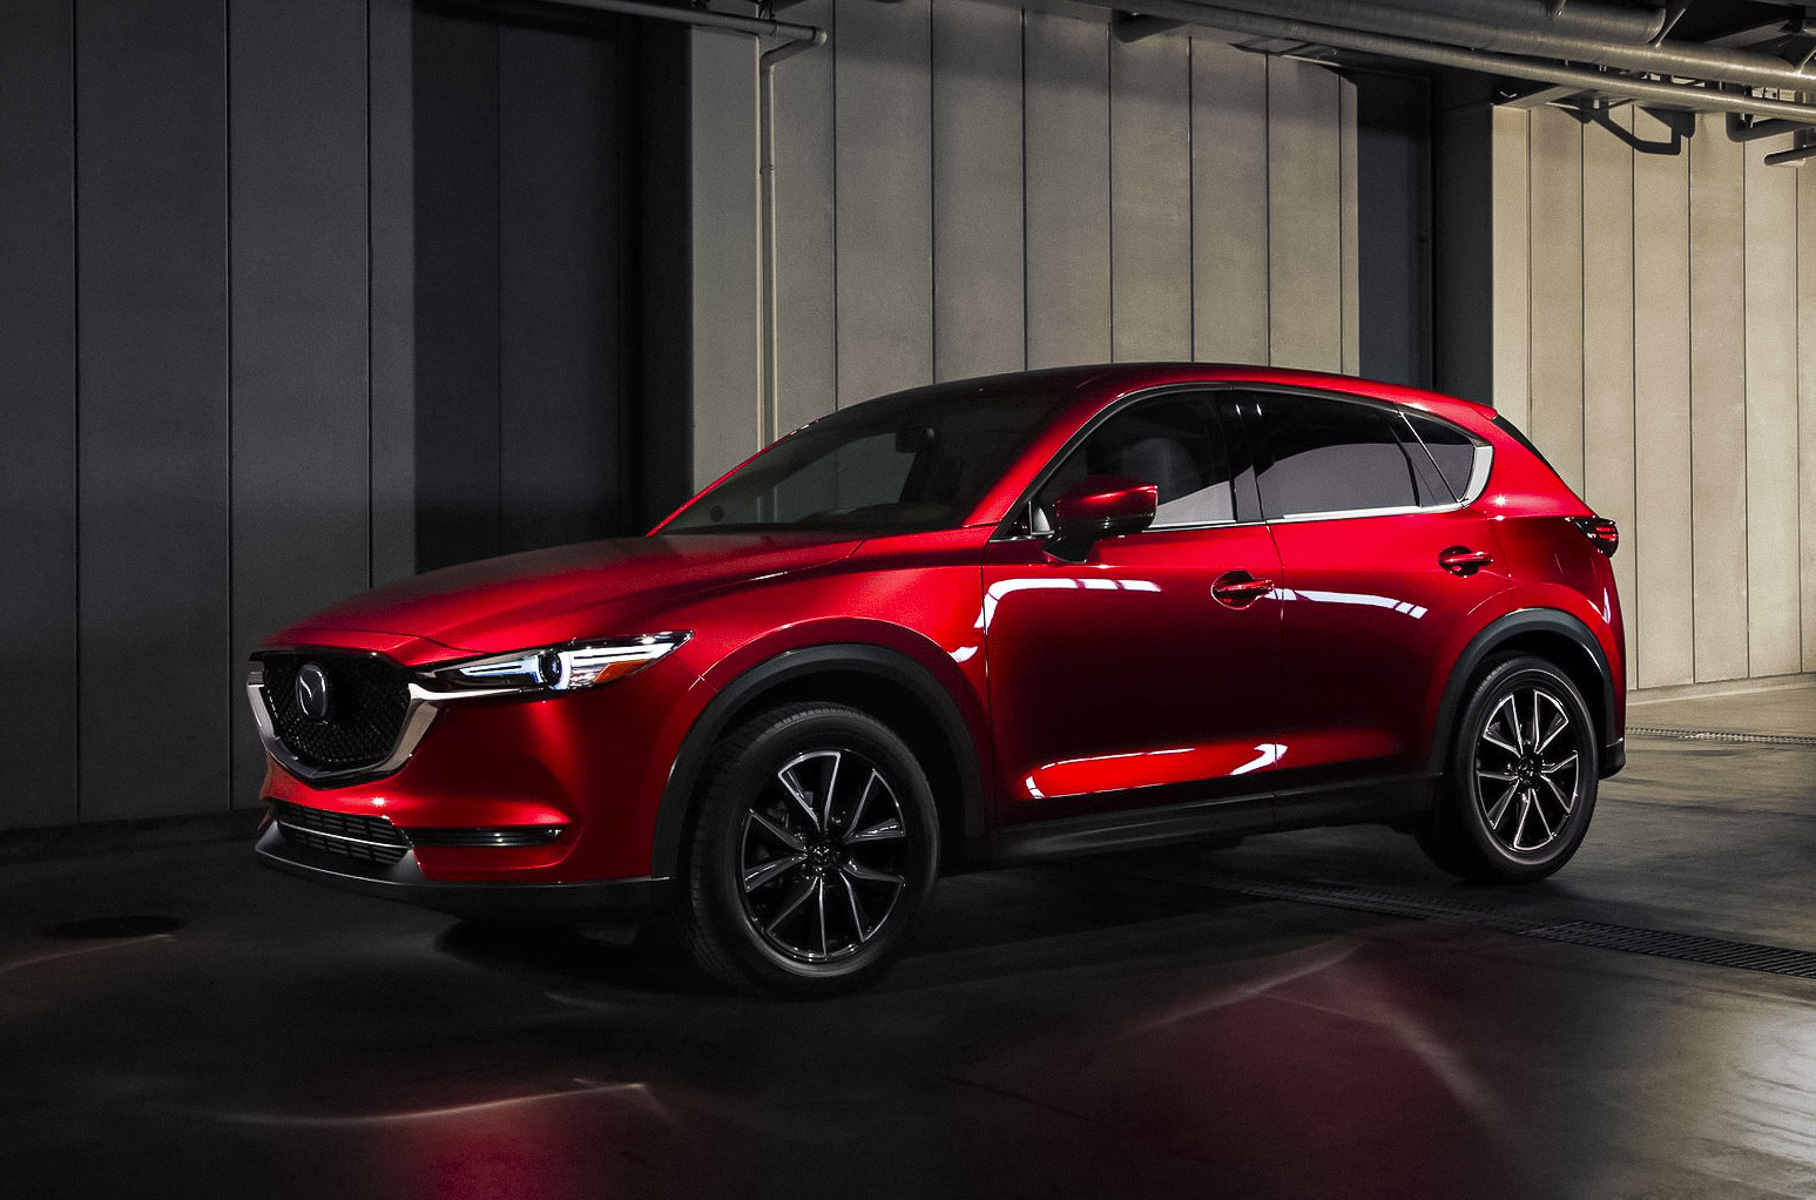 ### 10 место: Mazda CX-5 Открывает первую десятку [CX-5](https://motor.ru/news/mazda-cx-5-facelift-14-09-2021.htm), который в октябре выбрали 1759 россиян (в том же месяце 2020 года модель была продана в количестве 1626 штук). Актуальные на начало ноября розничные цены на кроссовер начинаются от 1 901 000 рублей. По сравнению с предыдущим месяцем CX-5 поднялся на четыре позиции вверх.